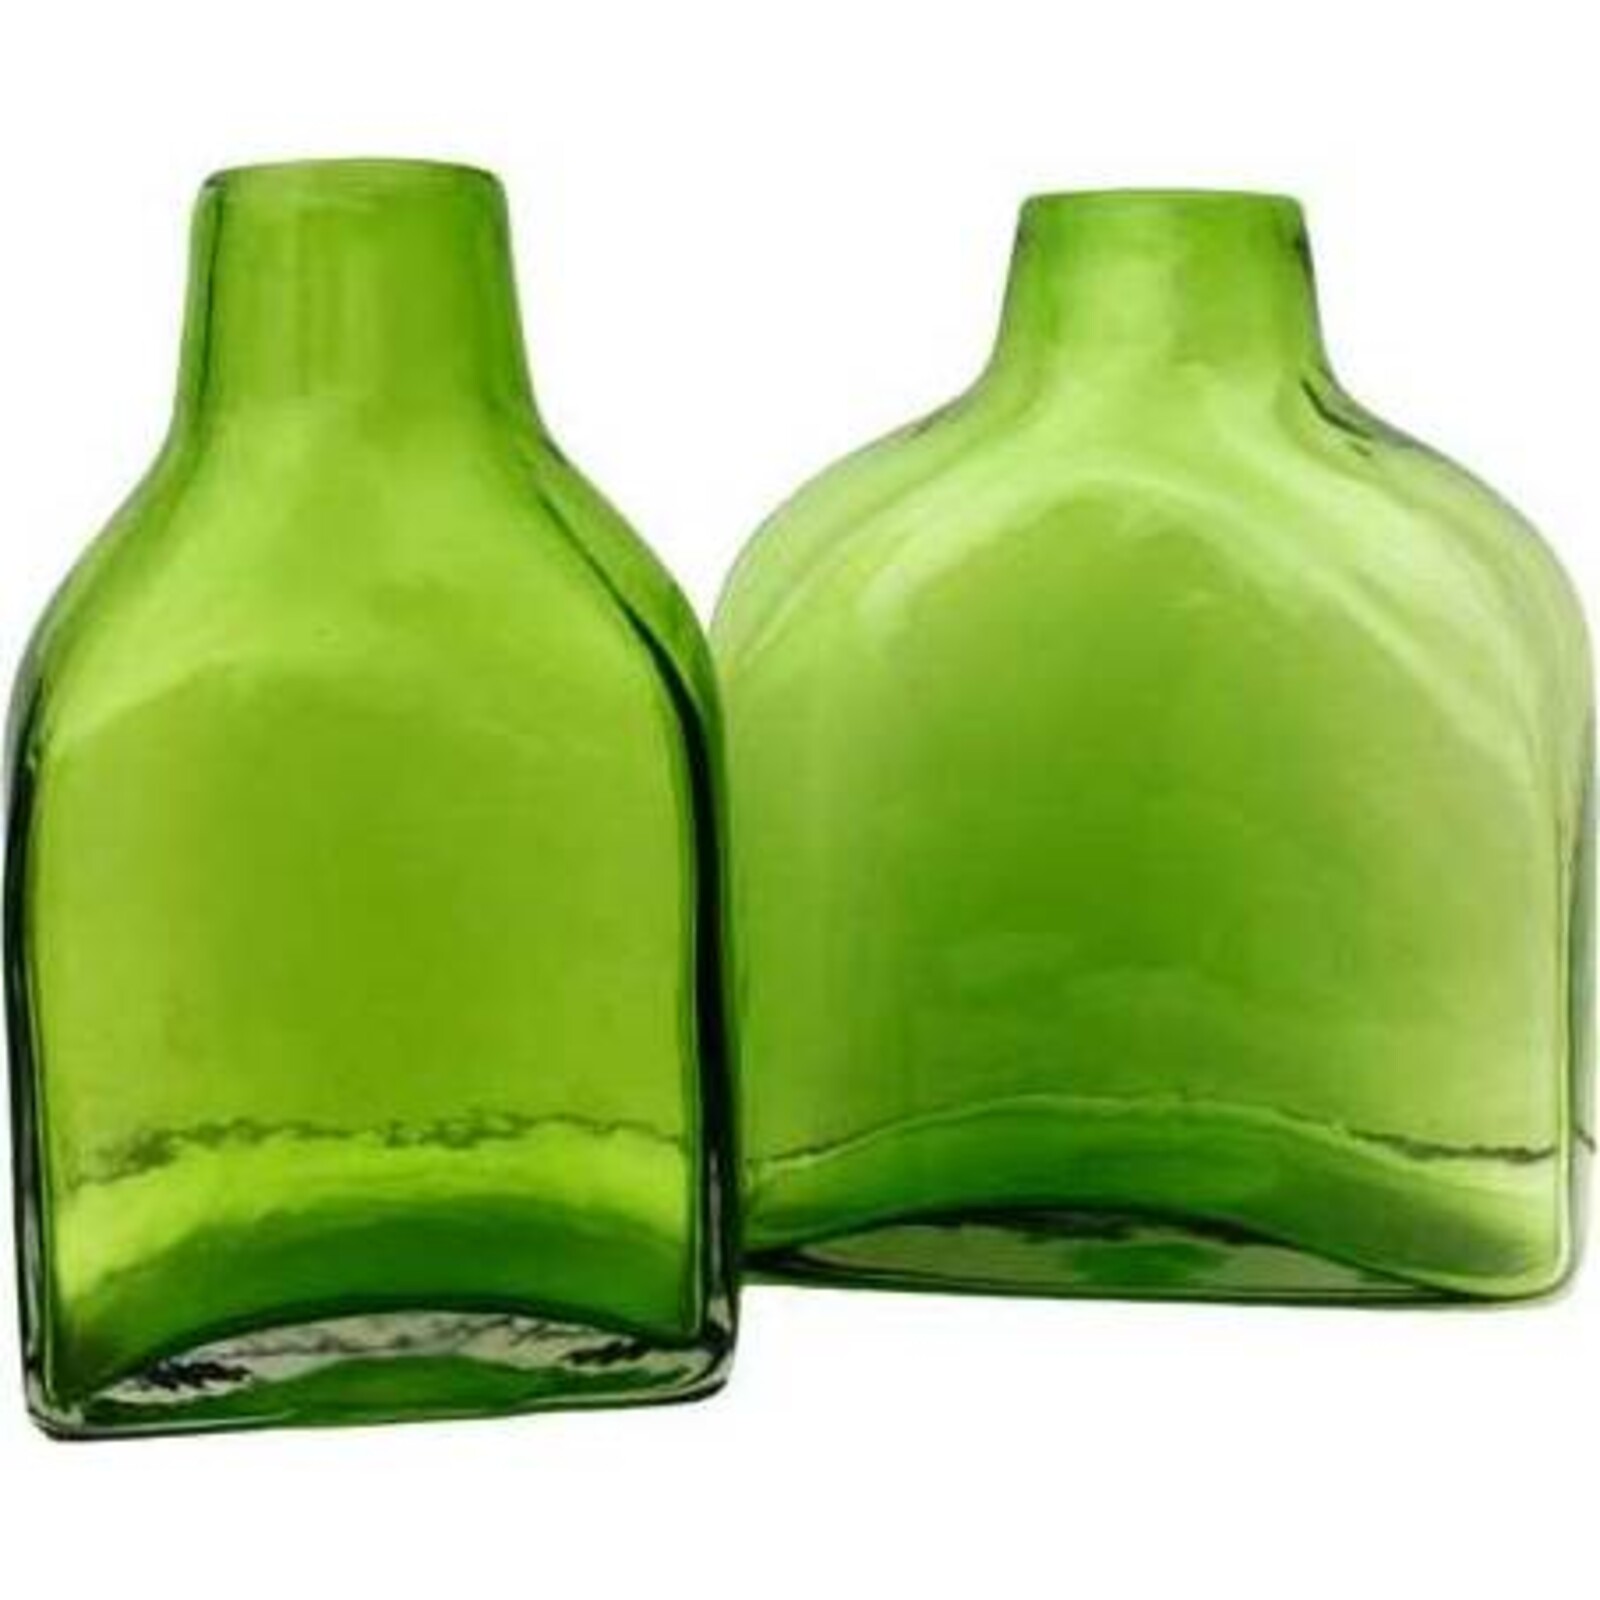 Glass Vase - Bahus Green 